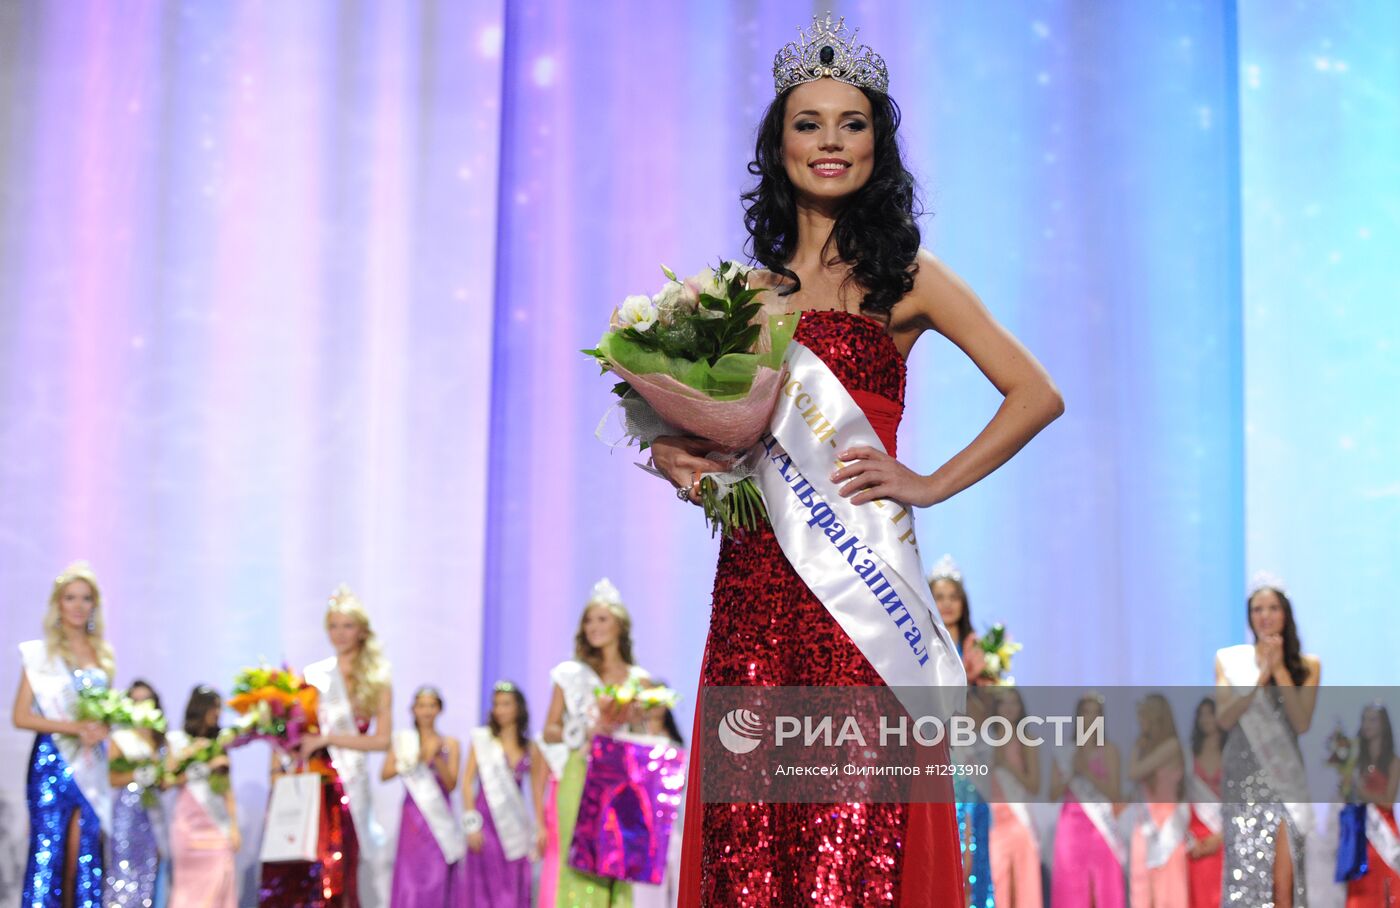 Финал конкурса "Краса России - 2012"